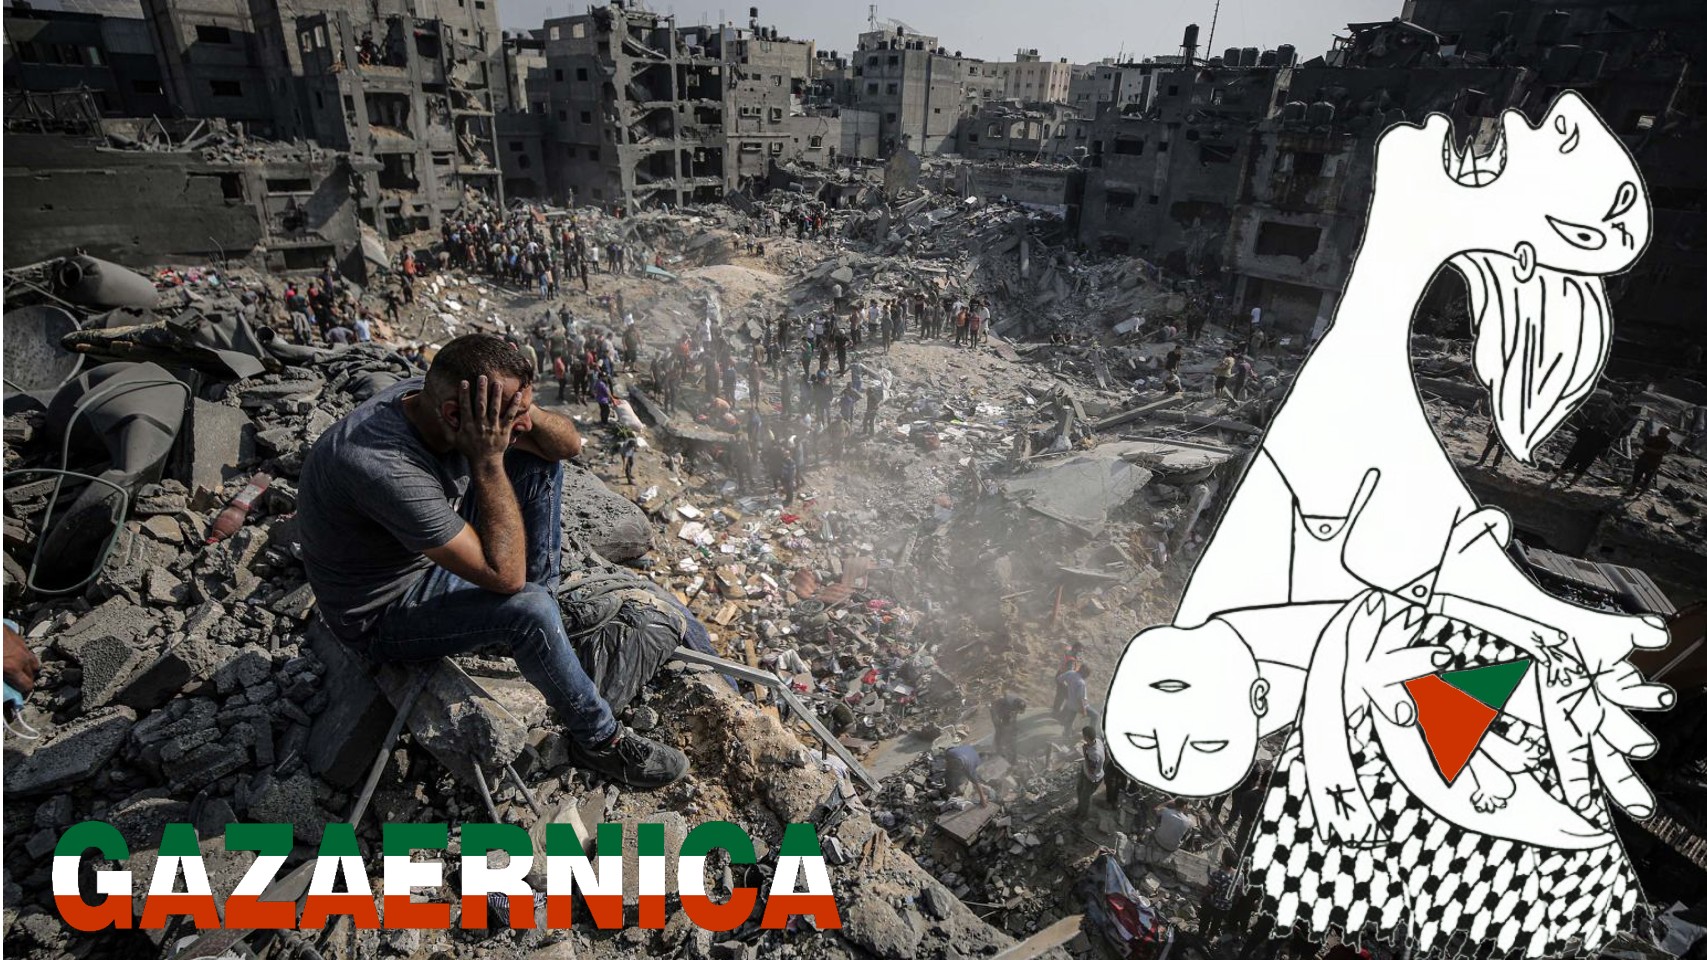 Παγκρήτιος σύλλογος φίλων Μίκη Θεοδωράκη: Να σταματήσει η σφαγή αμάχων στη Γάζα